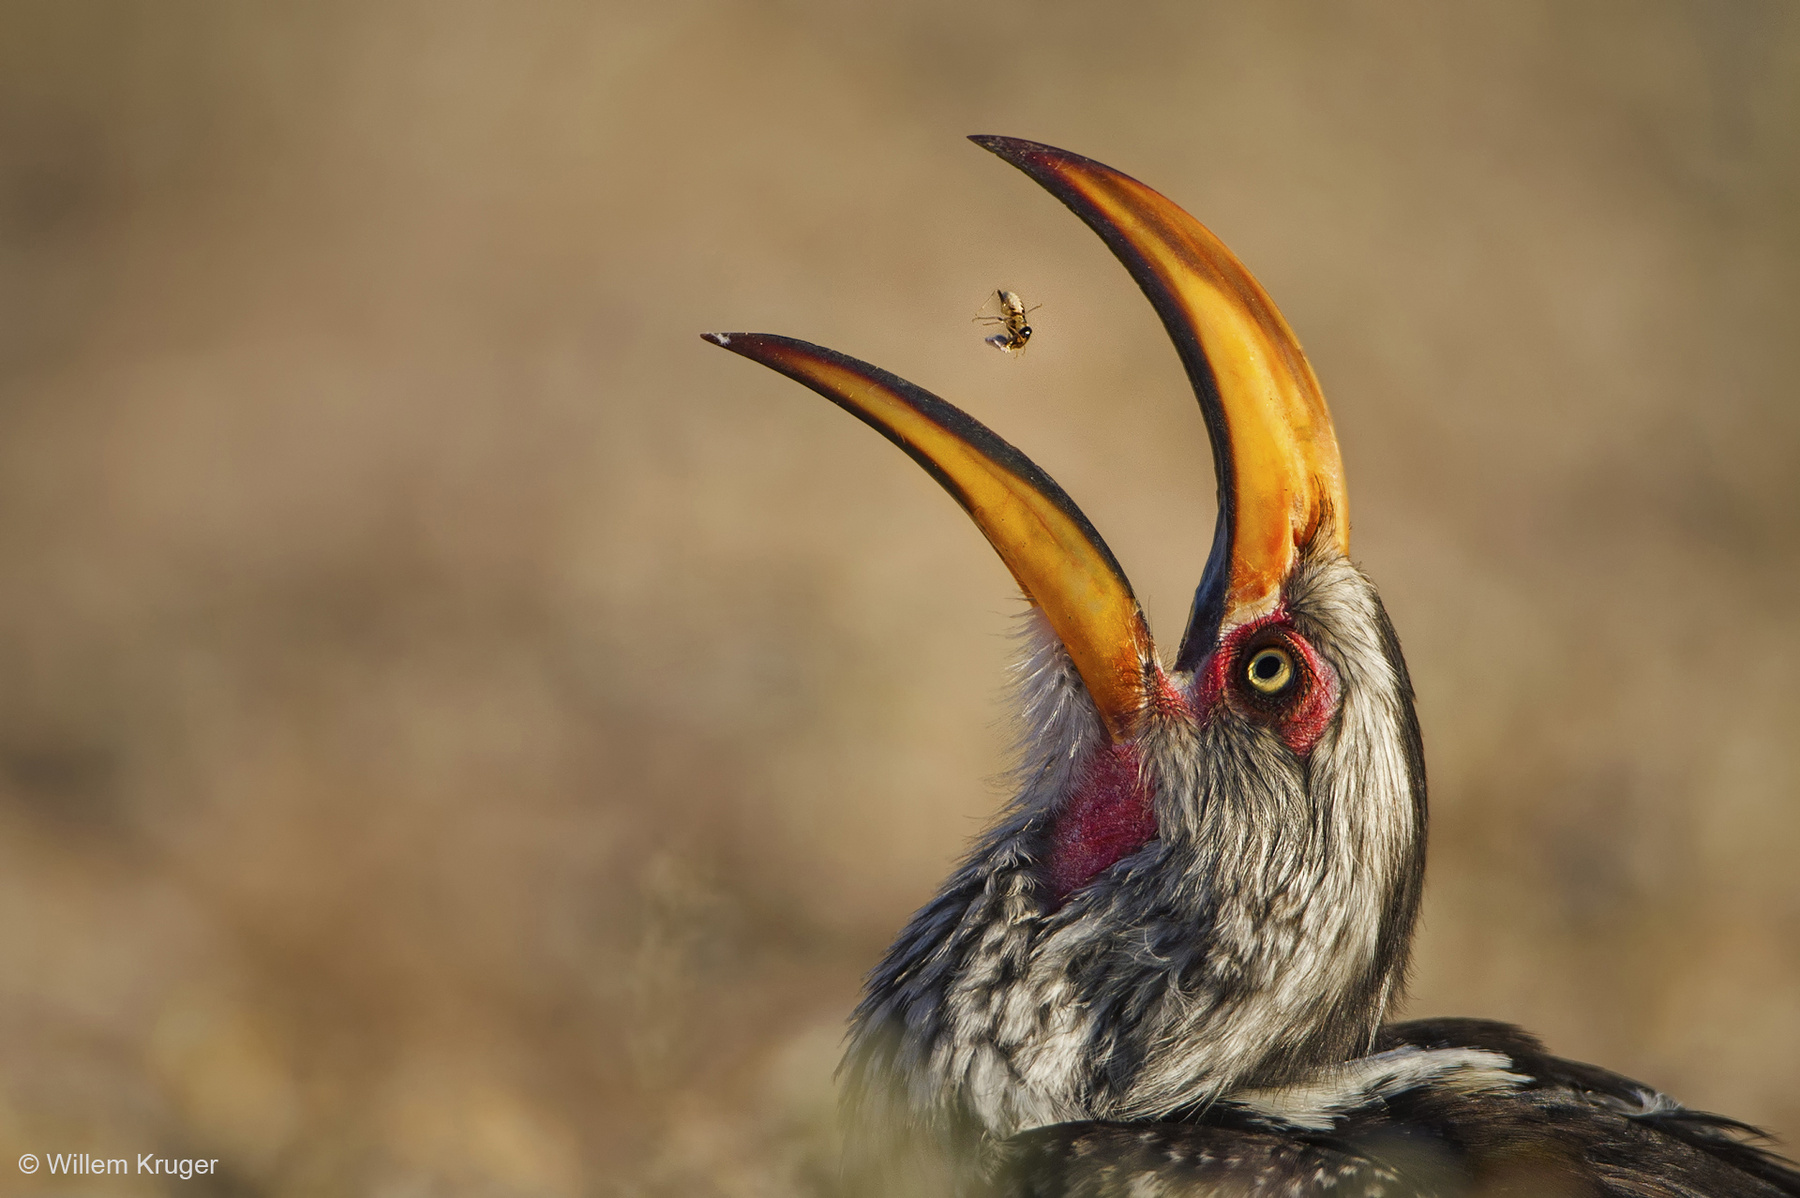 Déli sárgacsőrű tokó játszik az étellel egy afrikai nemzeti parkban. Az elcsípett termeszt a madár azért dobja a levegőbe, hogy könnyebben le tudja nyelni.
